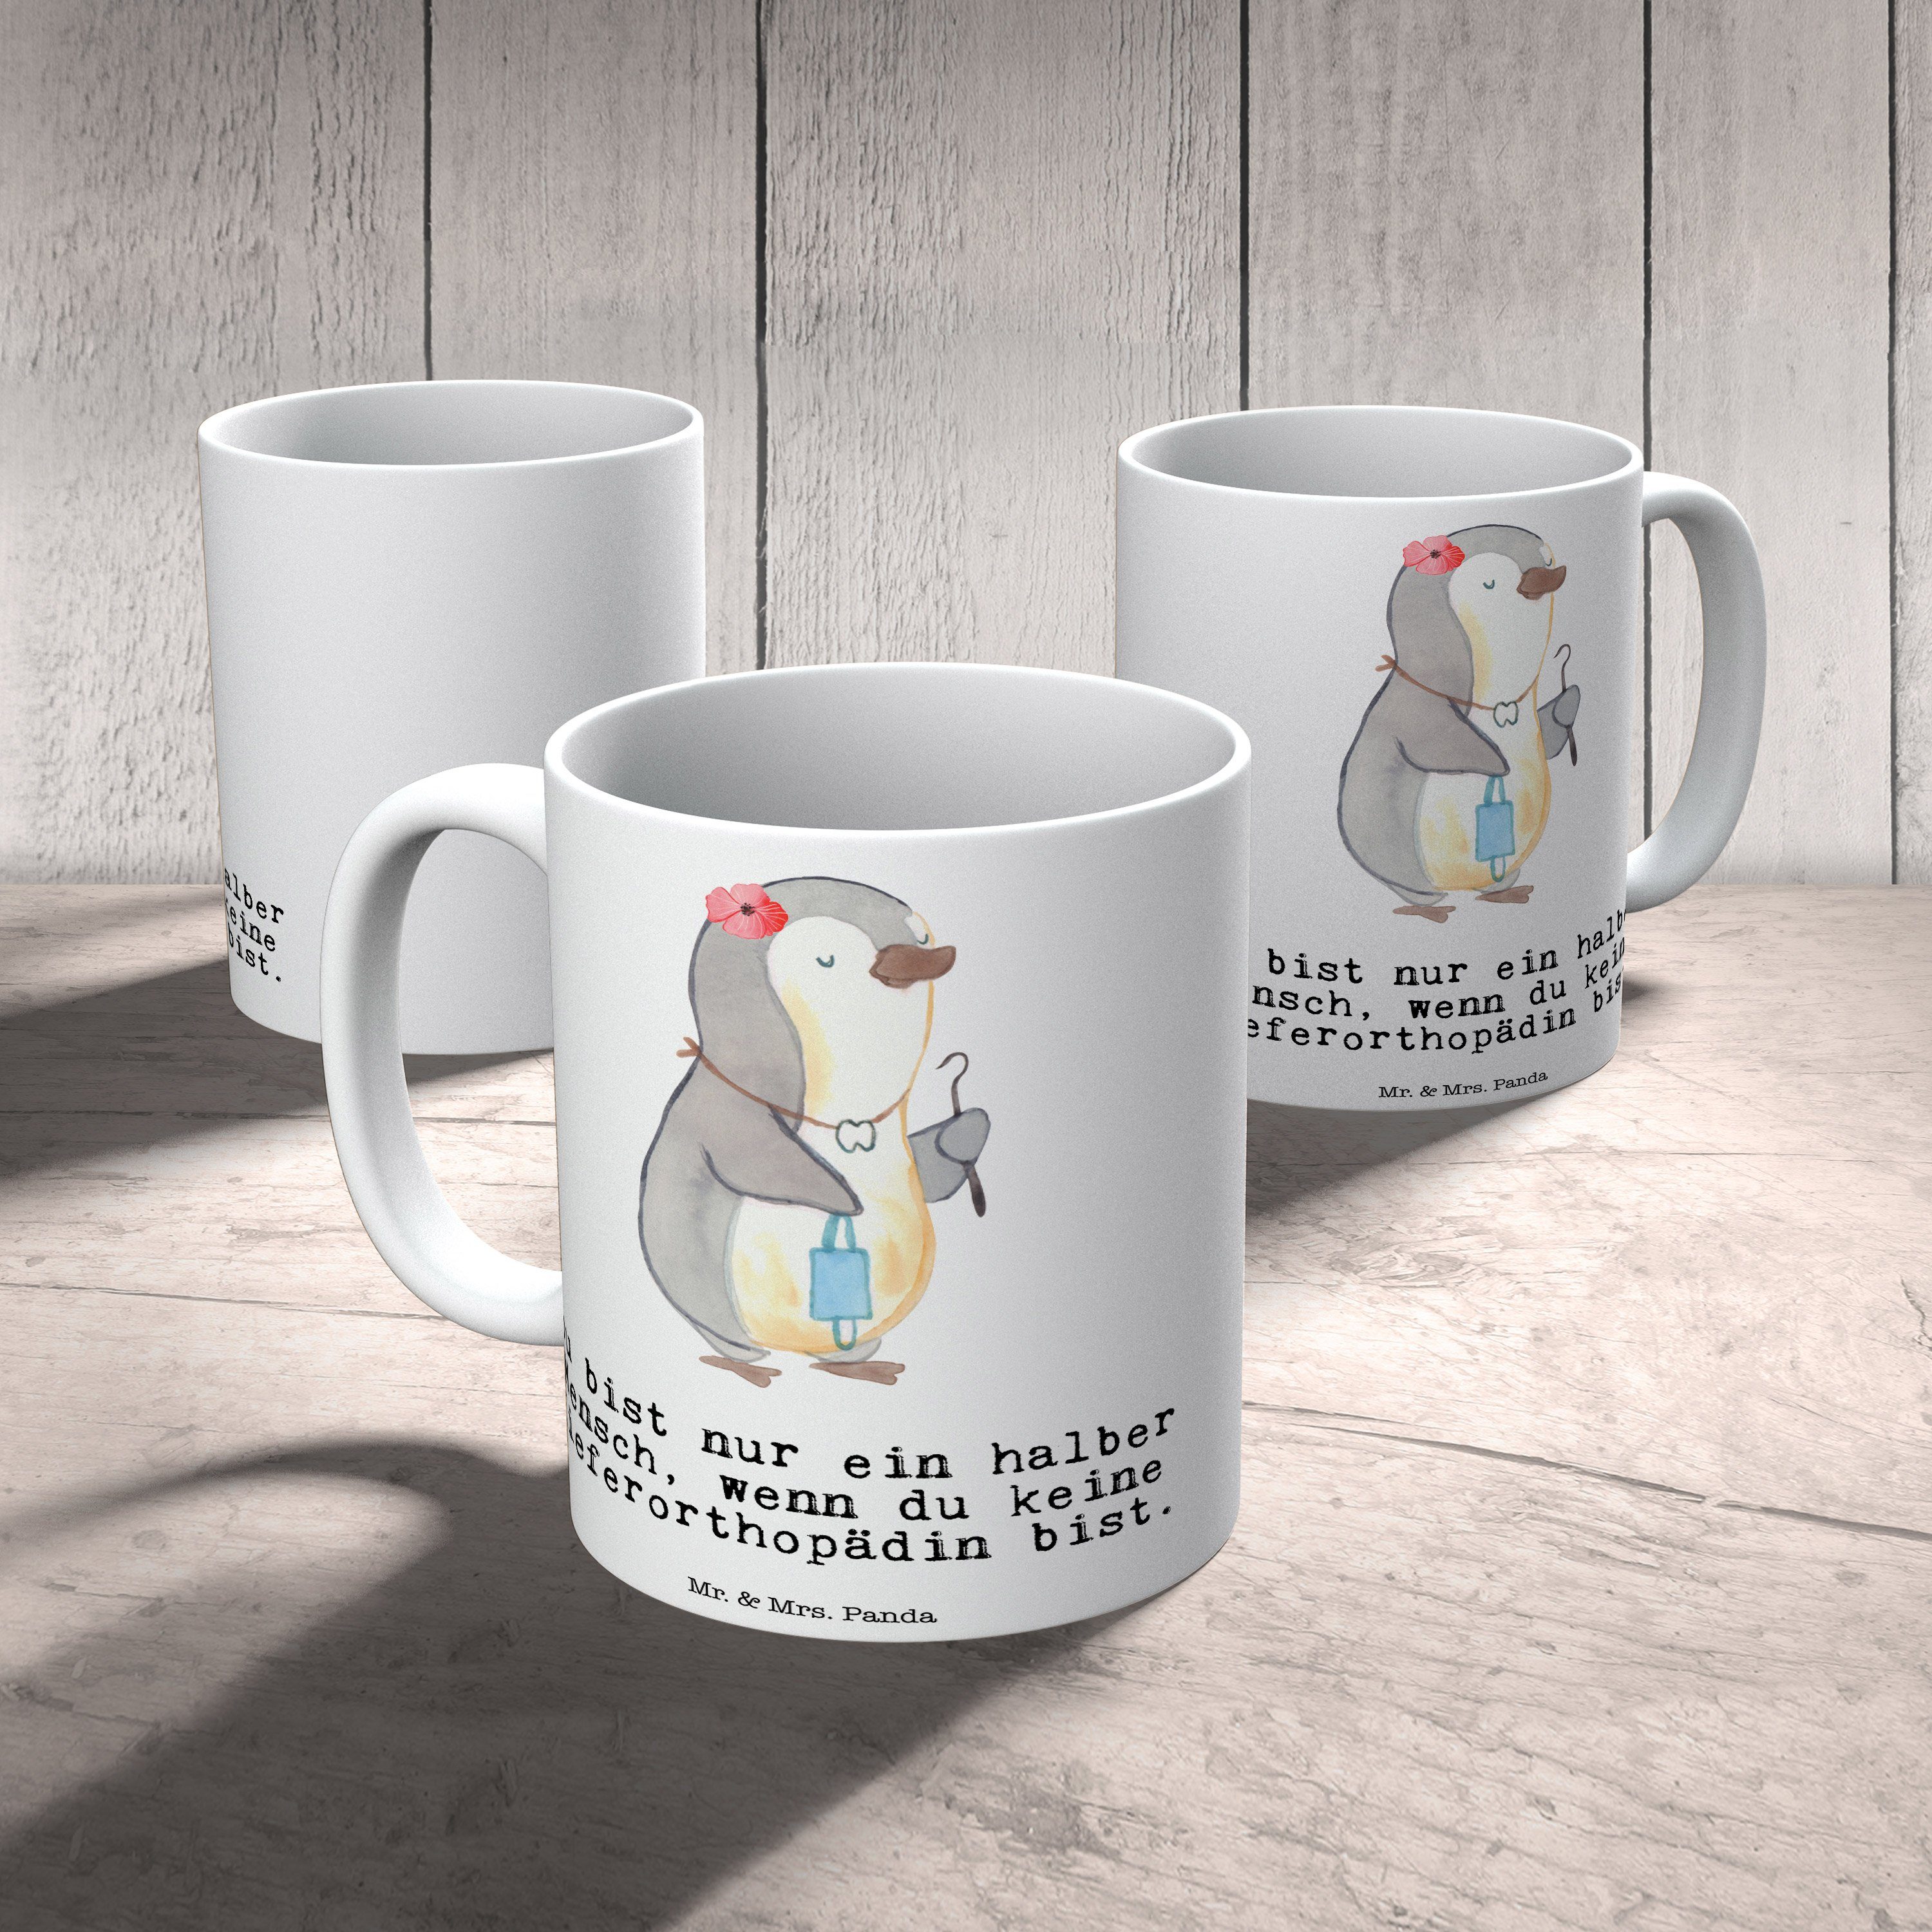 Mrs. Herz & - Sp, Panda Geschenk, Mr. Geschenk Kieferorthopädin mit Keramik Tasse Tasse Tasse, Weiß -